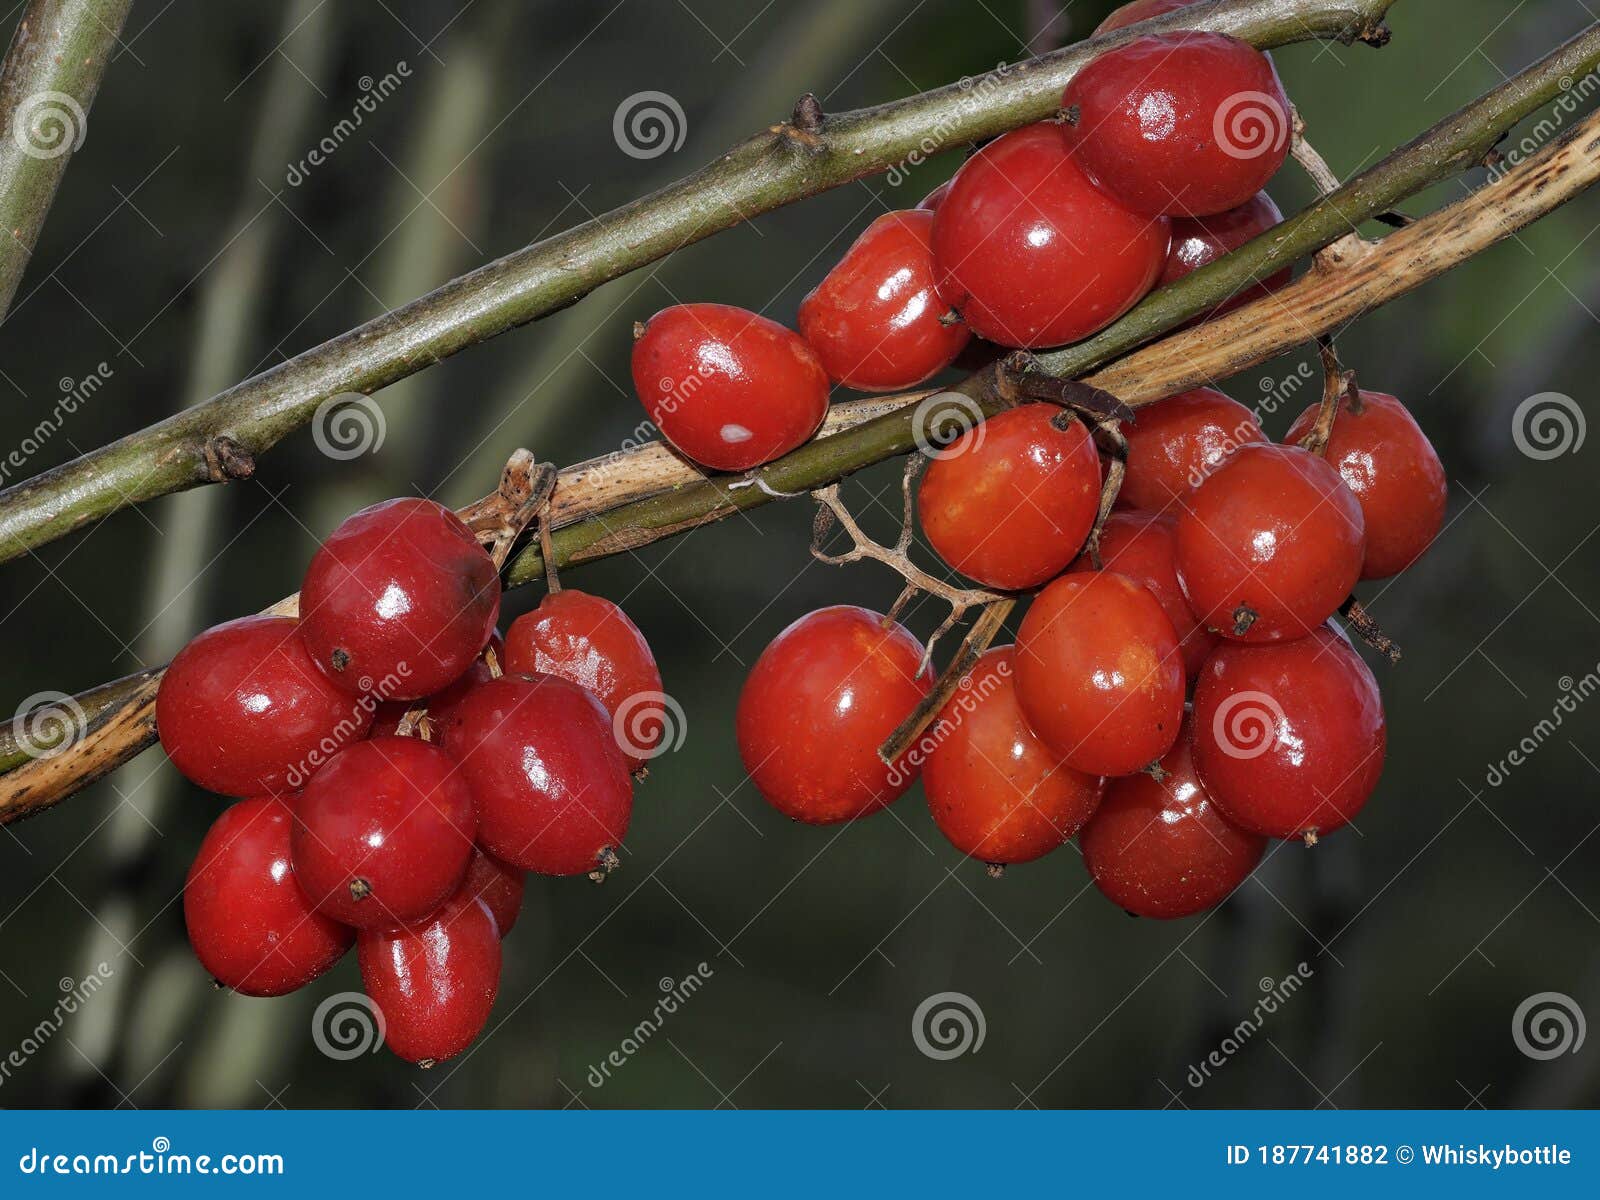 琼花 莓果 水果 布什 一群 治疗 红色 植物 民间医学图片下载 - 觅知网